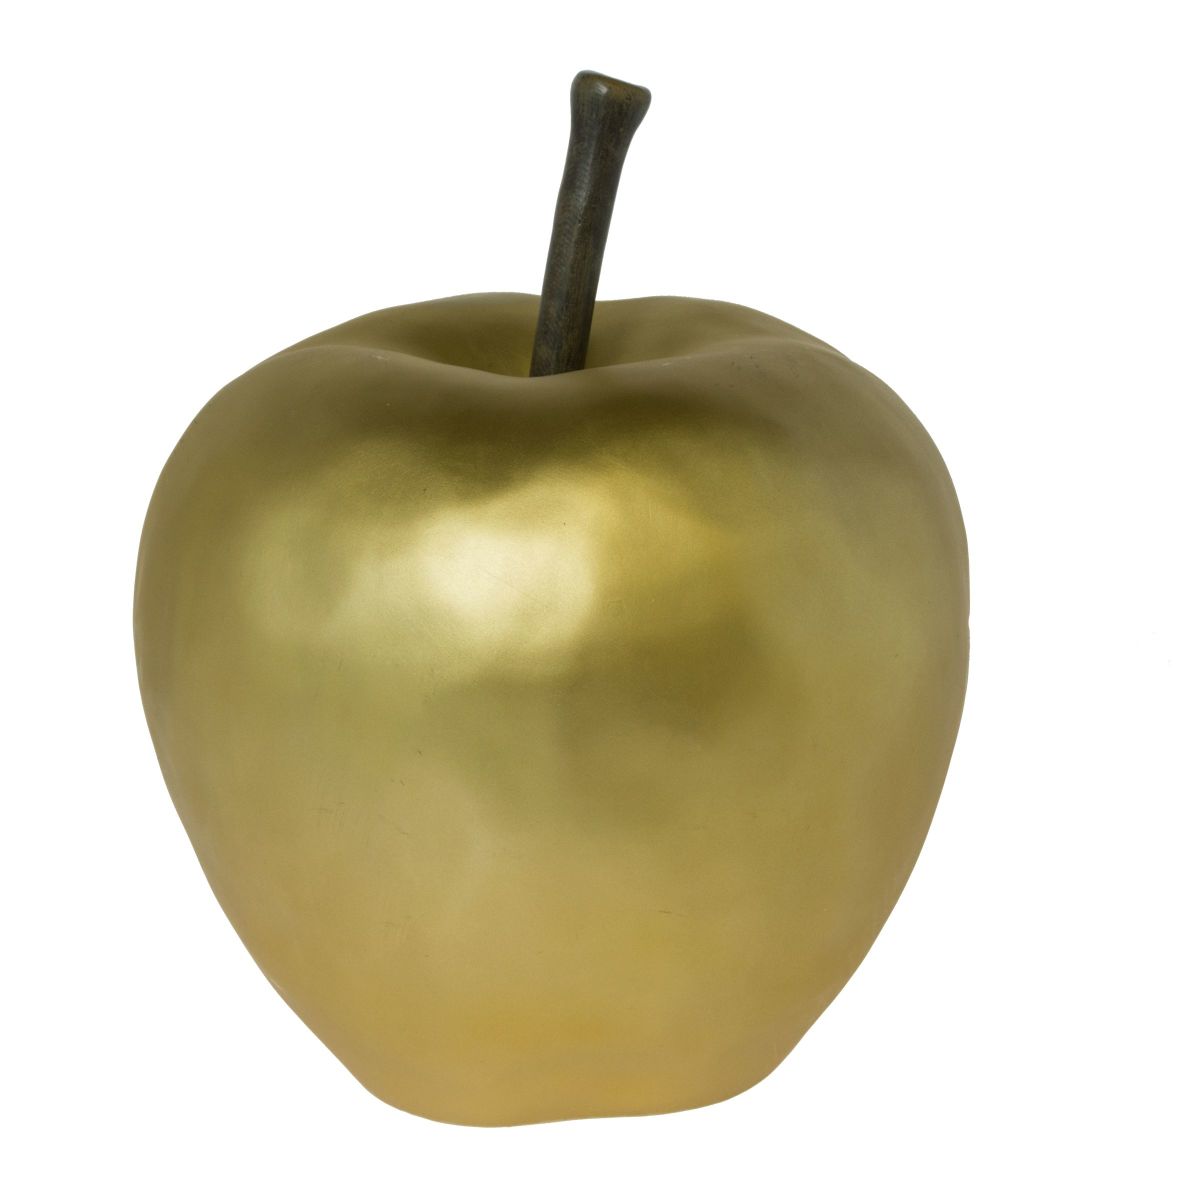 Modernes Deko-Objekt in Form eines goldenen Apfels. In mattem Gold, Maße: ca. 37 cm hoch, 27 cm Ø, Gewicht: ca. 3,4 kg, Material: Polyresin.<br>